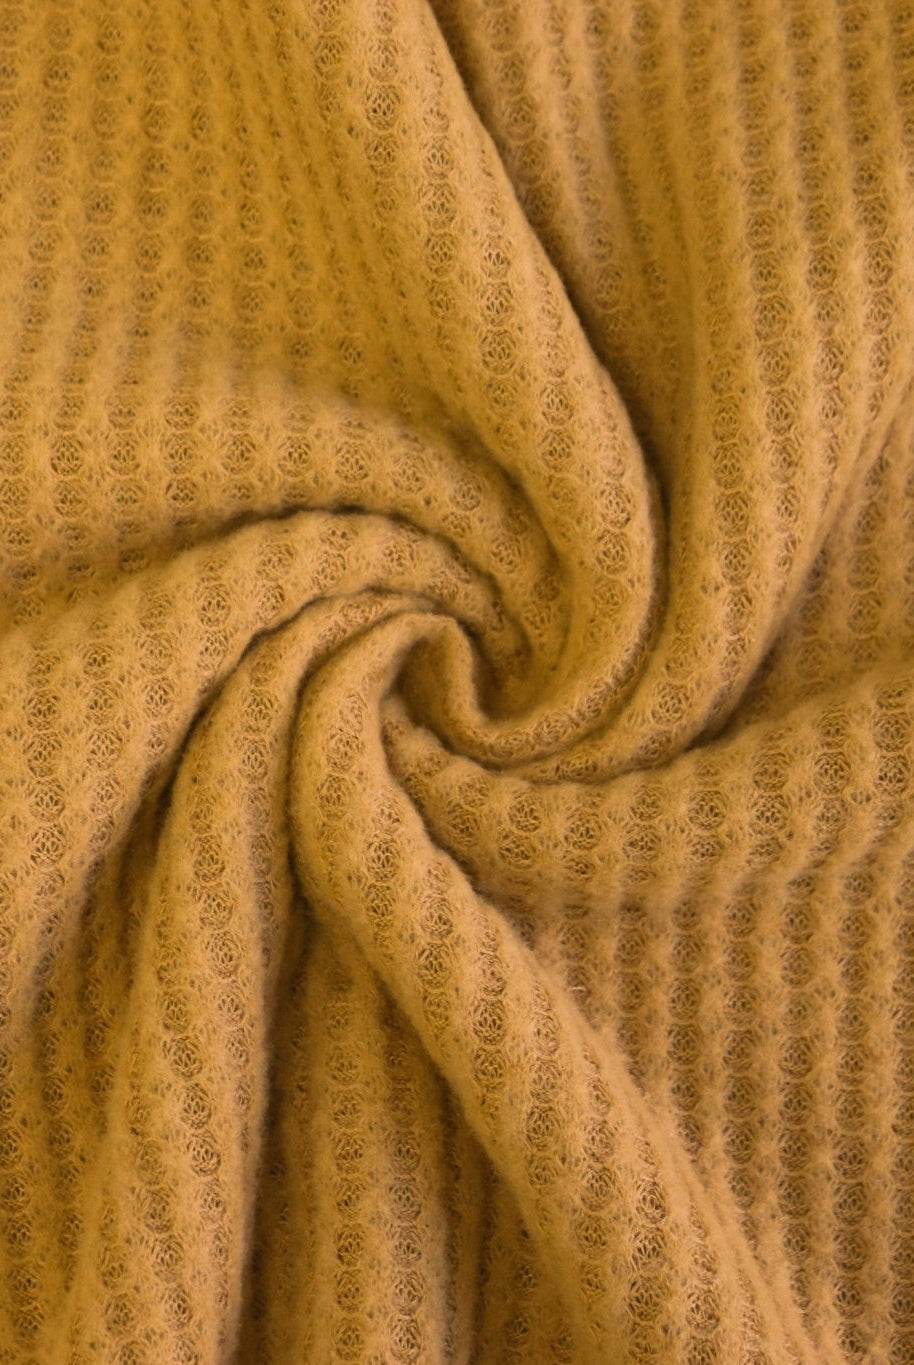 Last Cuts! Mustard Yellow Brushed Waffle Knit. BWAFF-116 - Boho Fabrics